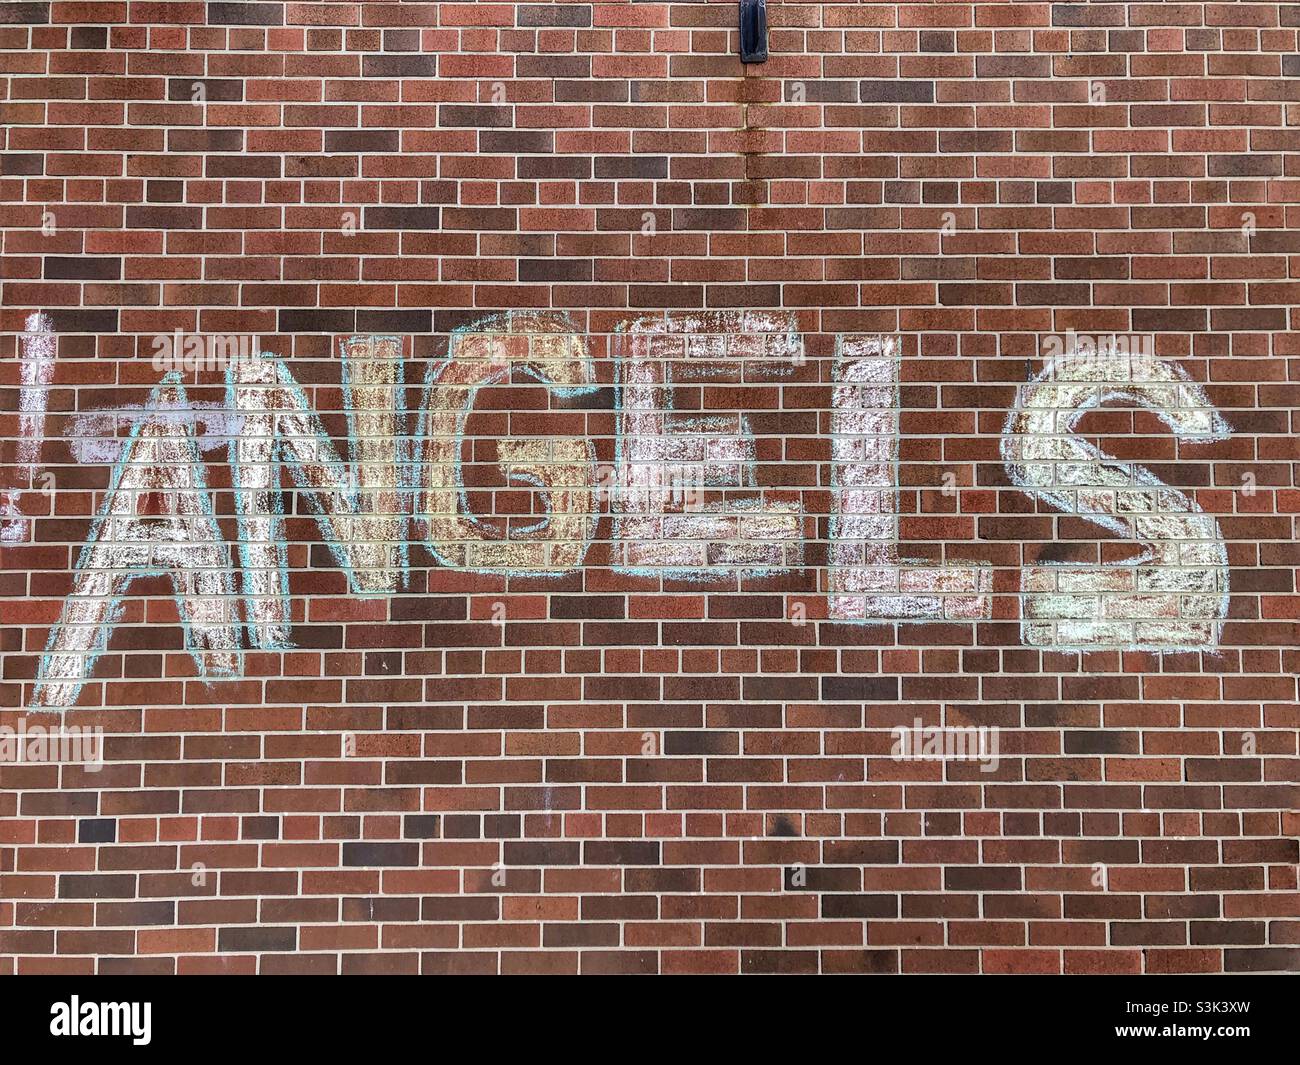 Engel, die in Kreide auf eine Ziegelmauer geschrieben wurden. Stockfoto